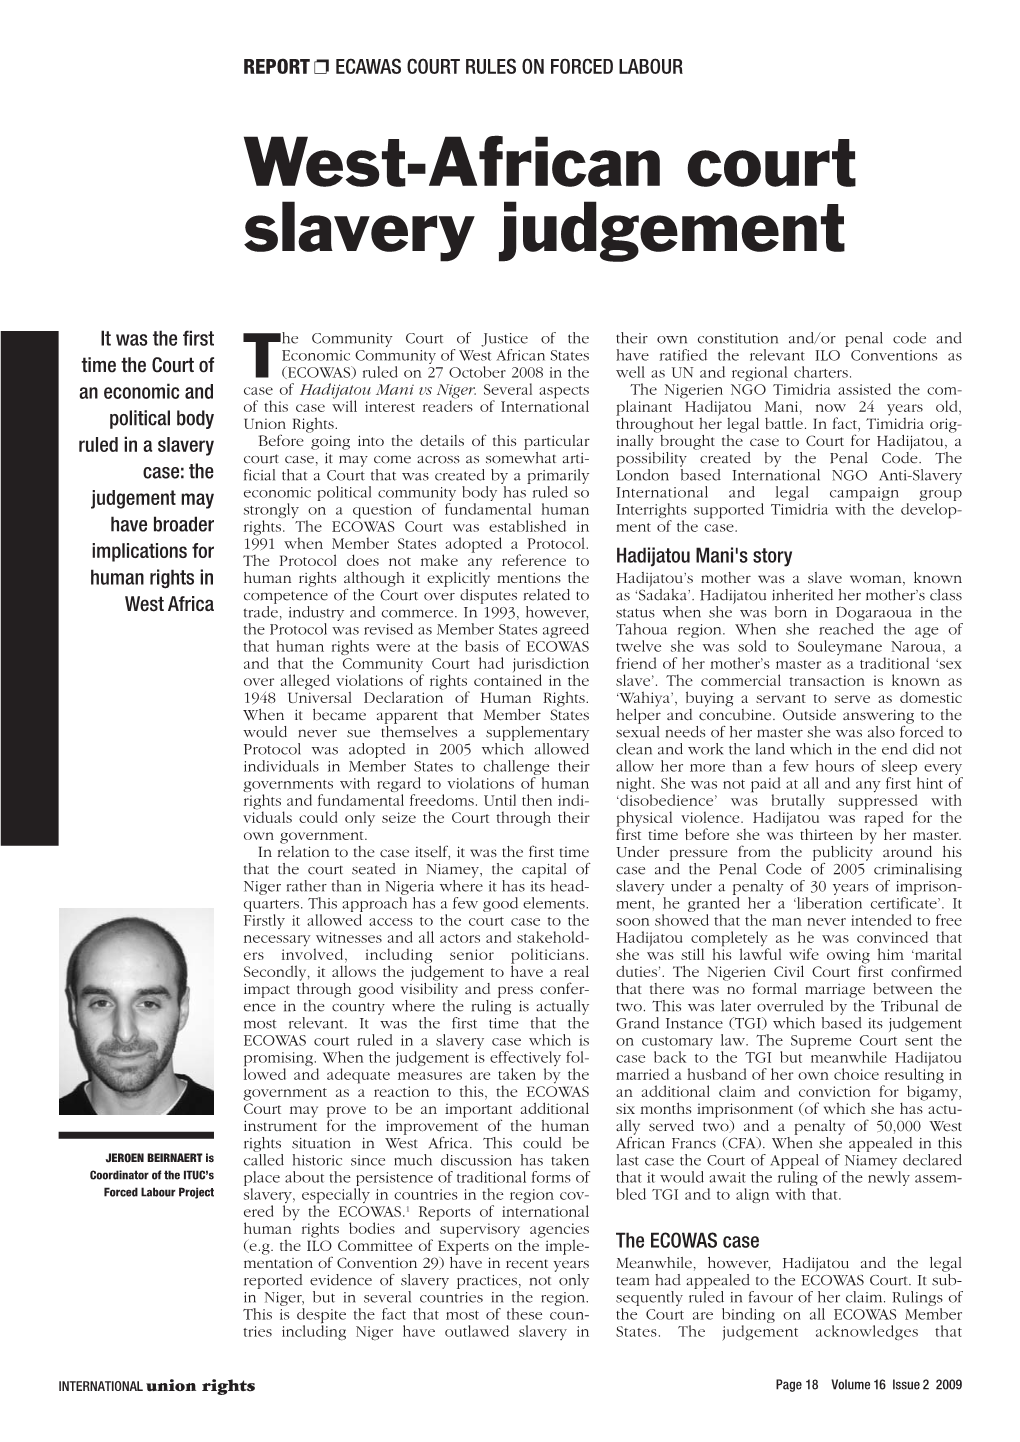 West-African Court Slavery Judgement